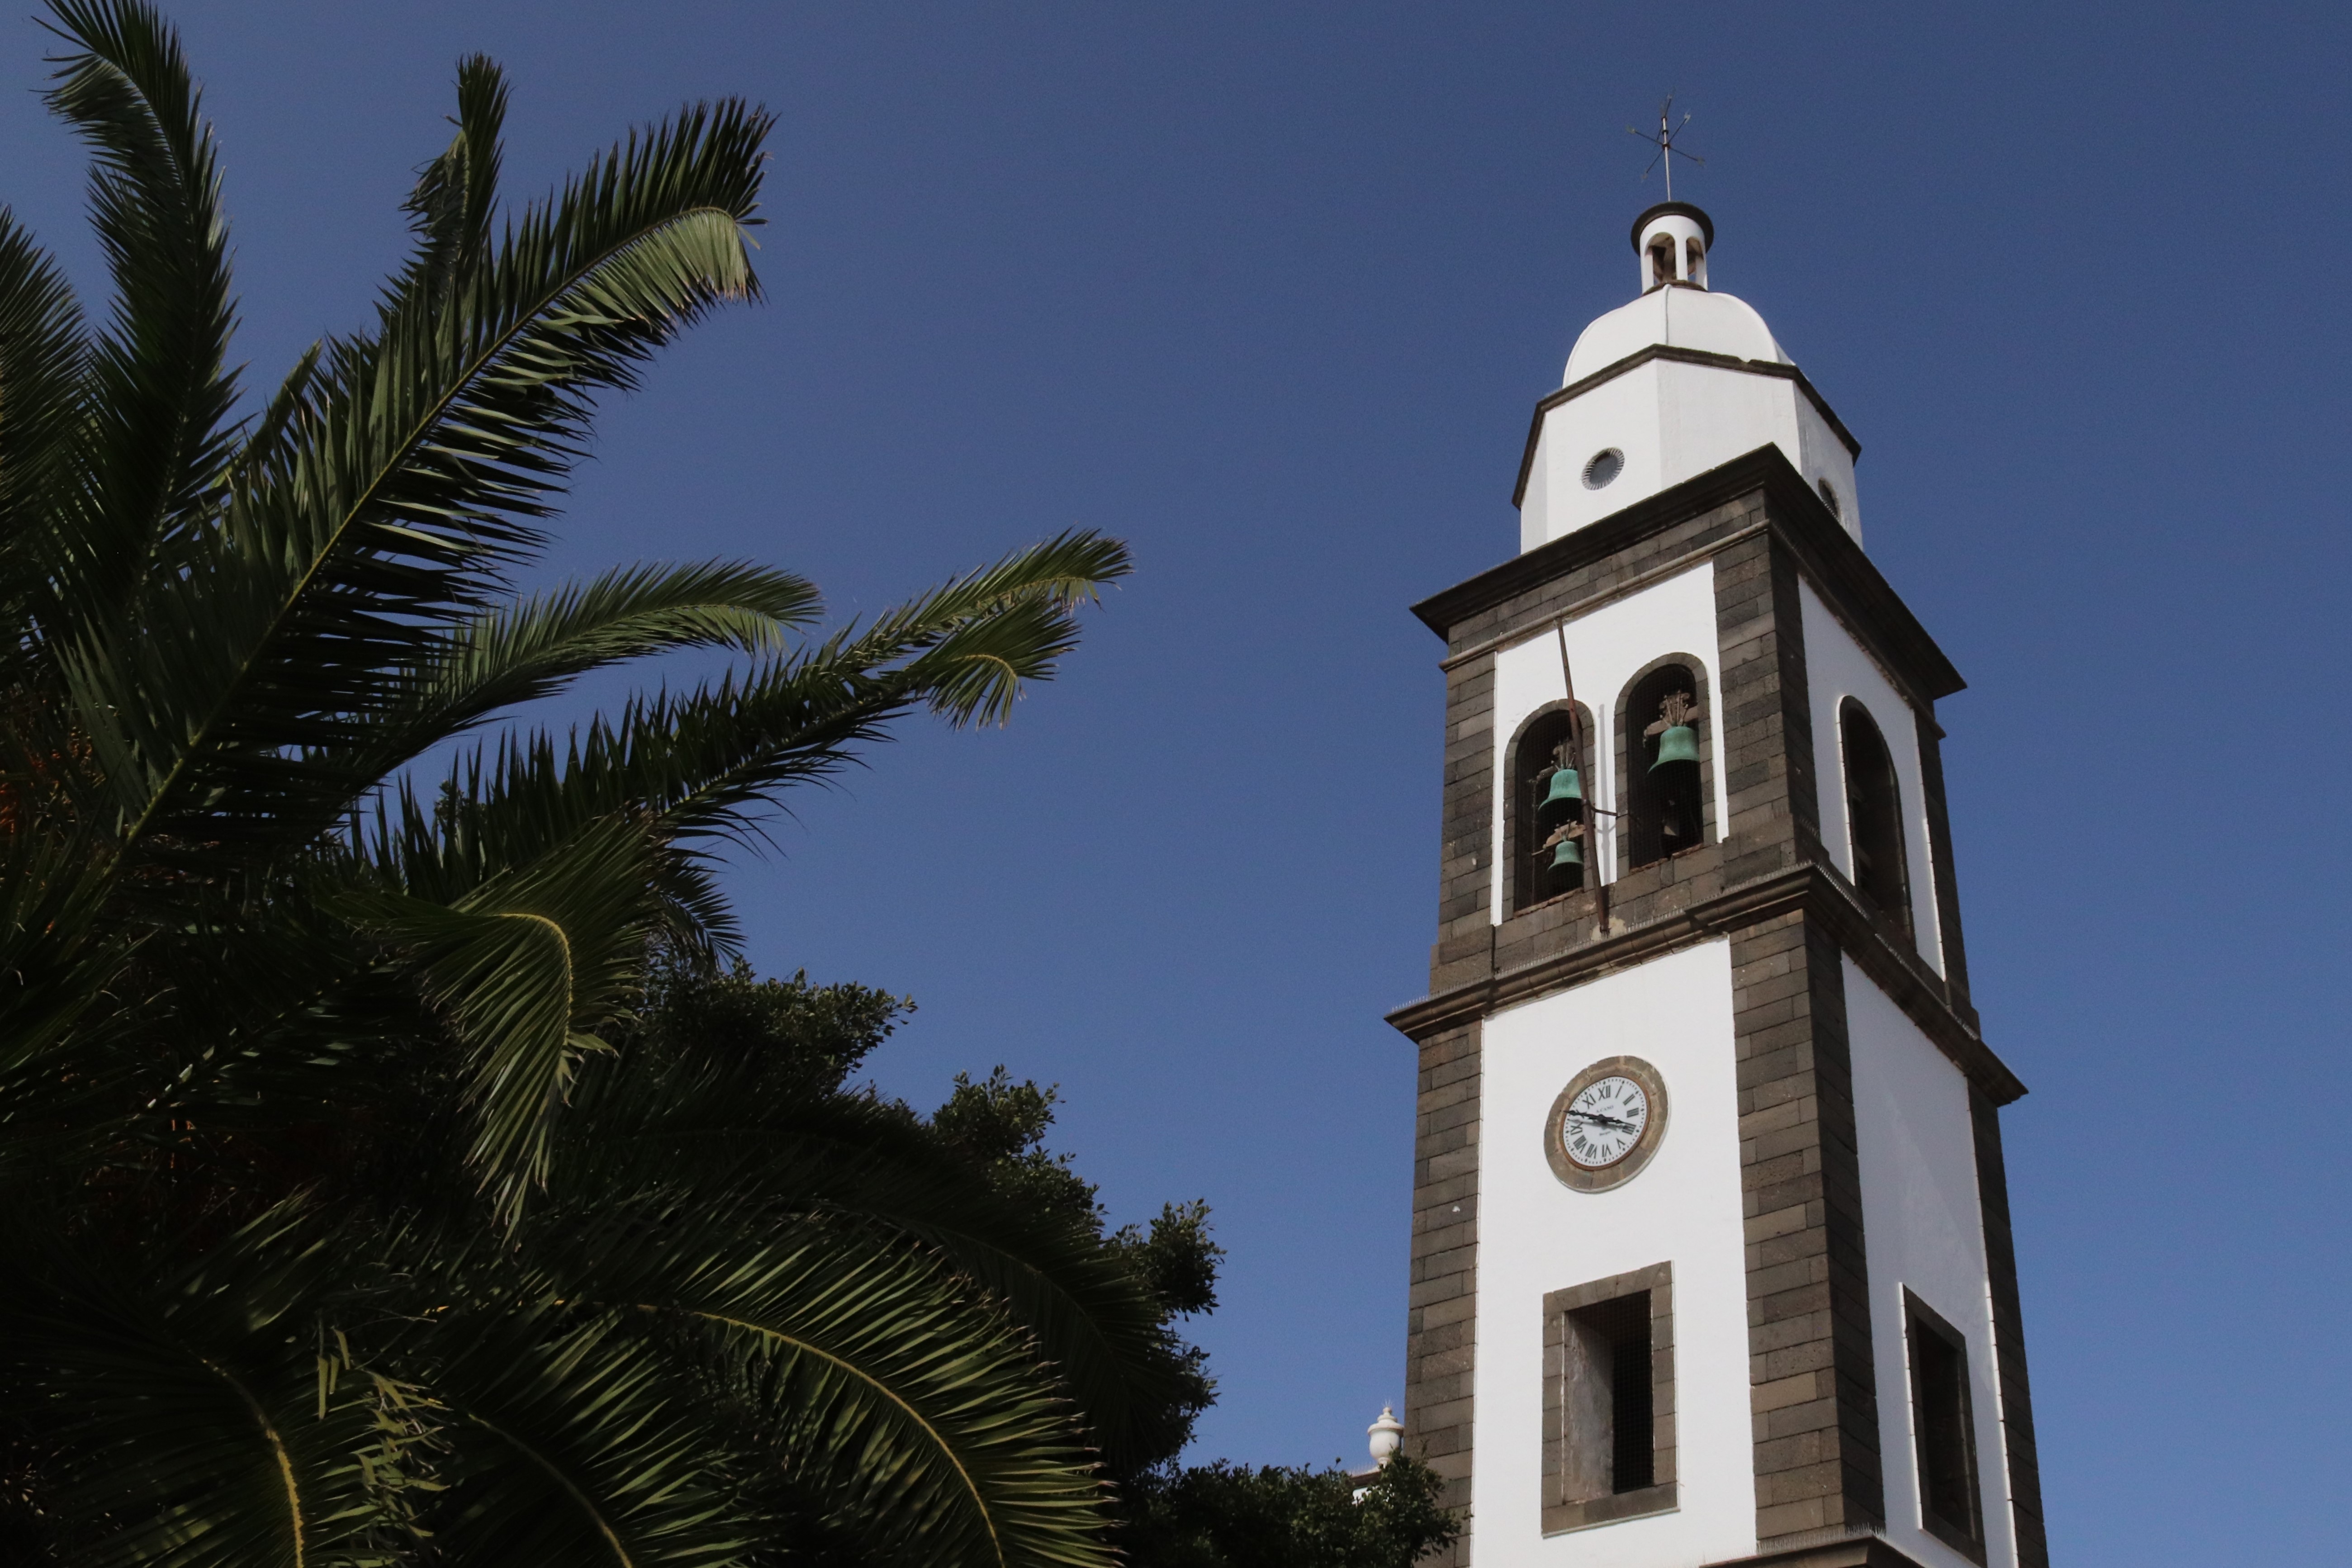 Iglesia de San GinÃ©s by a palm tree